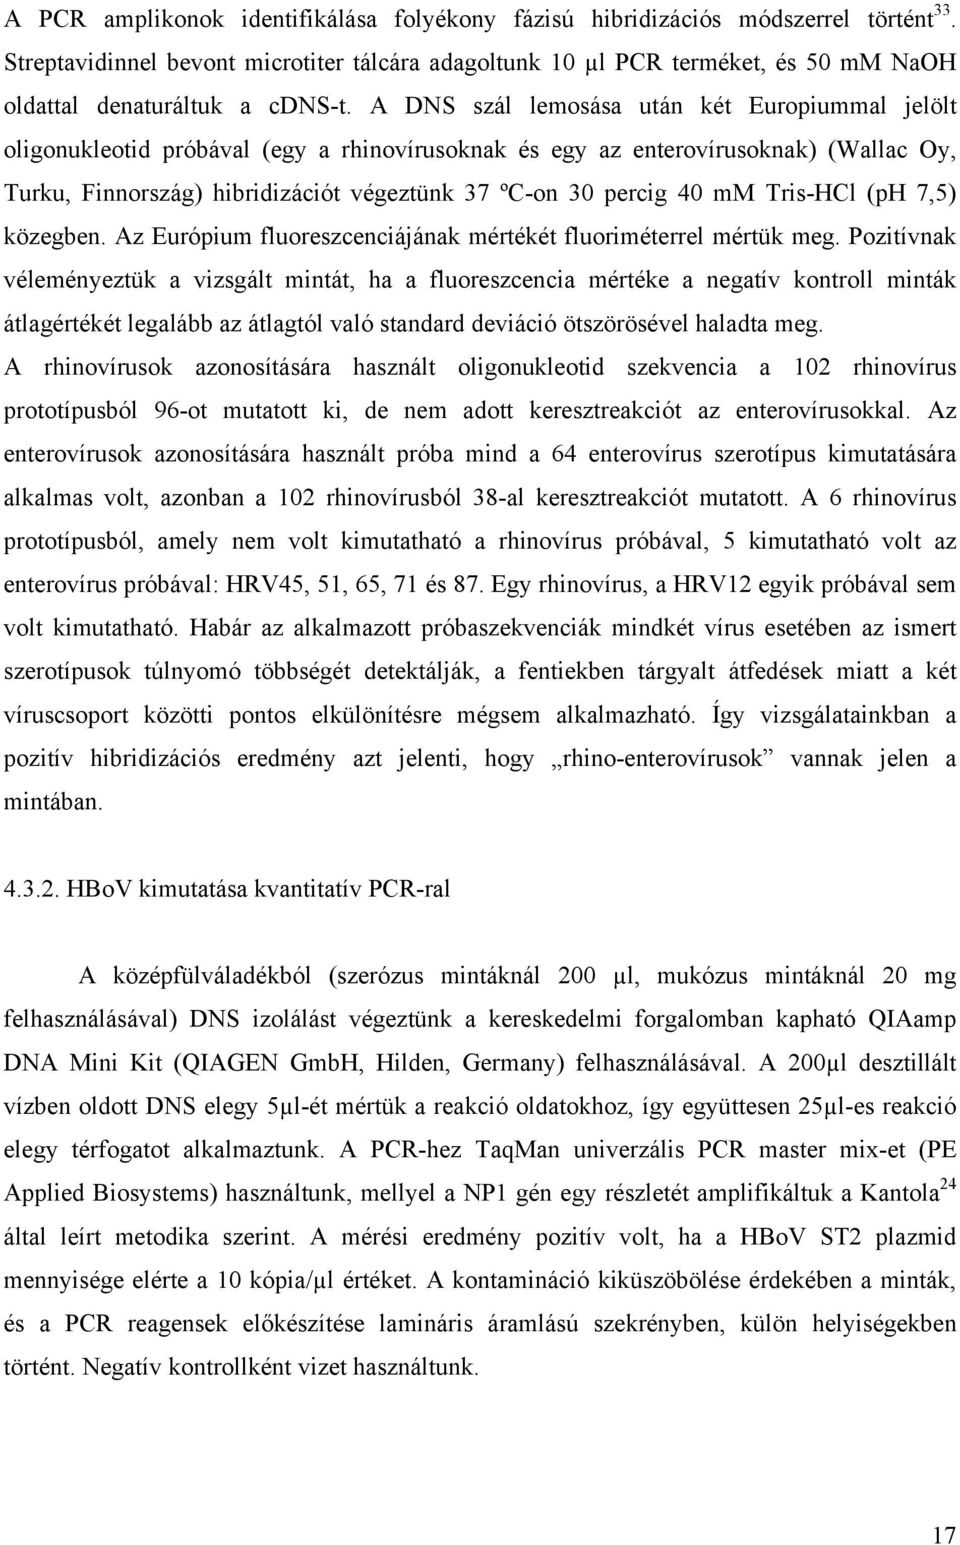 A DNS szál lemosása után két Europiummal jelölt oligonukleotid próbával (egy a rhinovírusoknak és egy az enterovírusoknak) (Wallac Oy, Turku, Finnország) hibridizációt végeztünk 37 ºC-on 30 percig 40